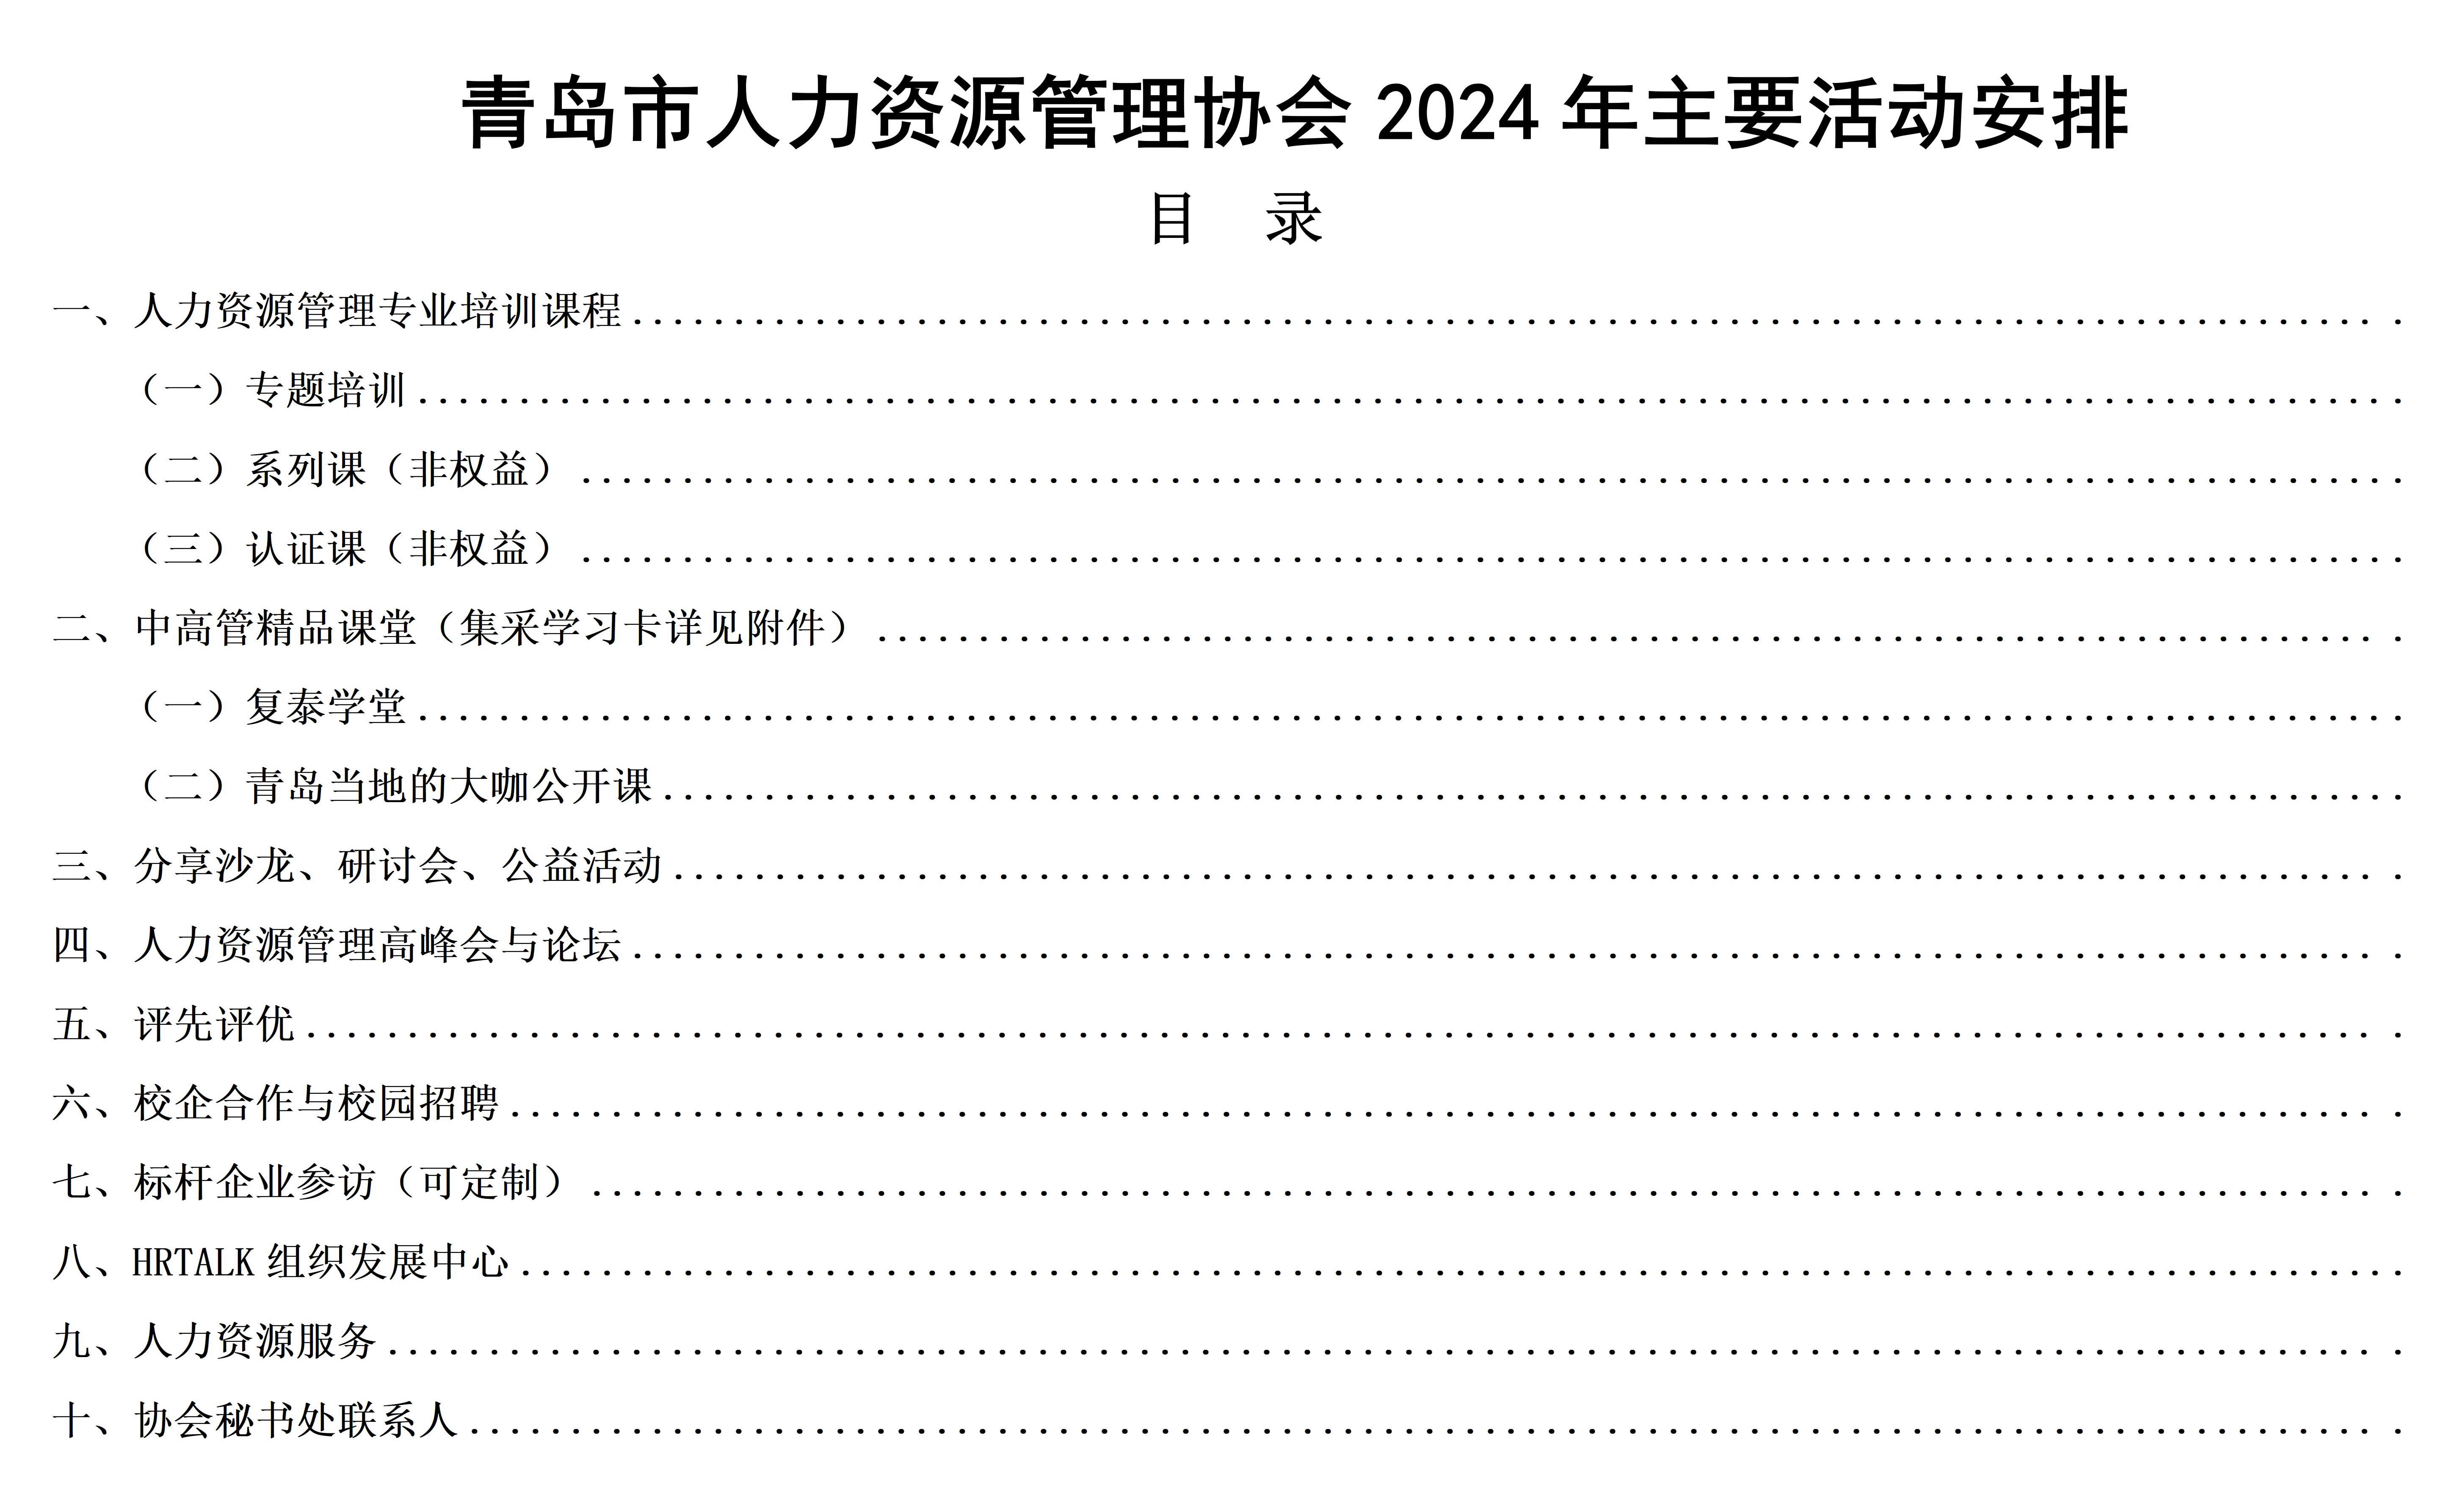 [青人资协] 2024年主要活动计划安排(图1)